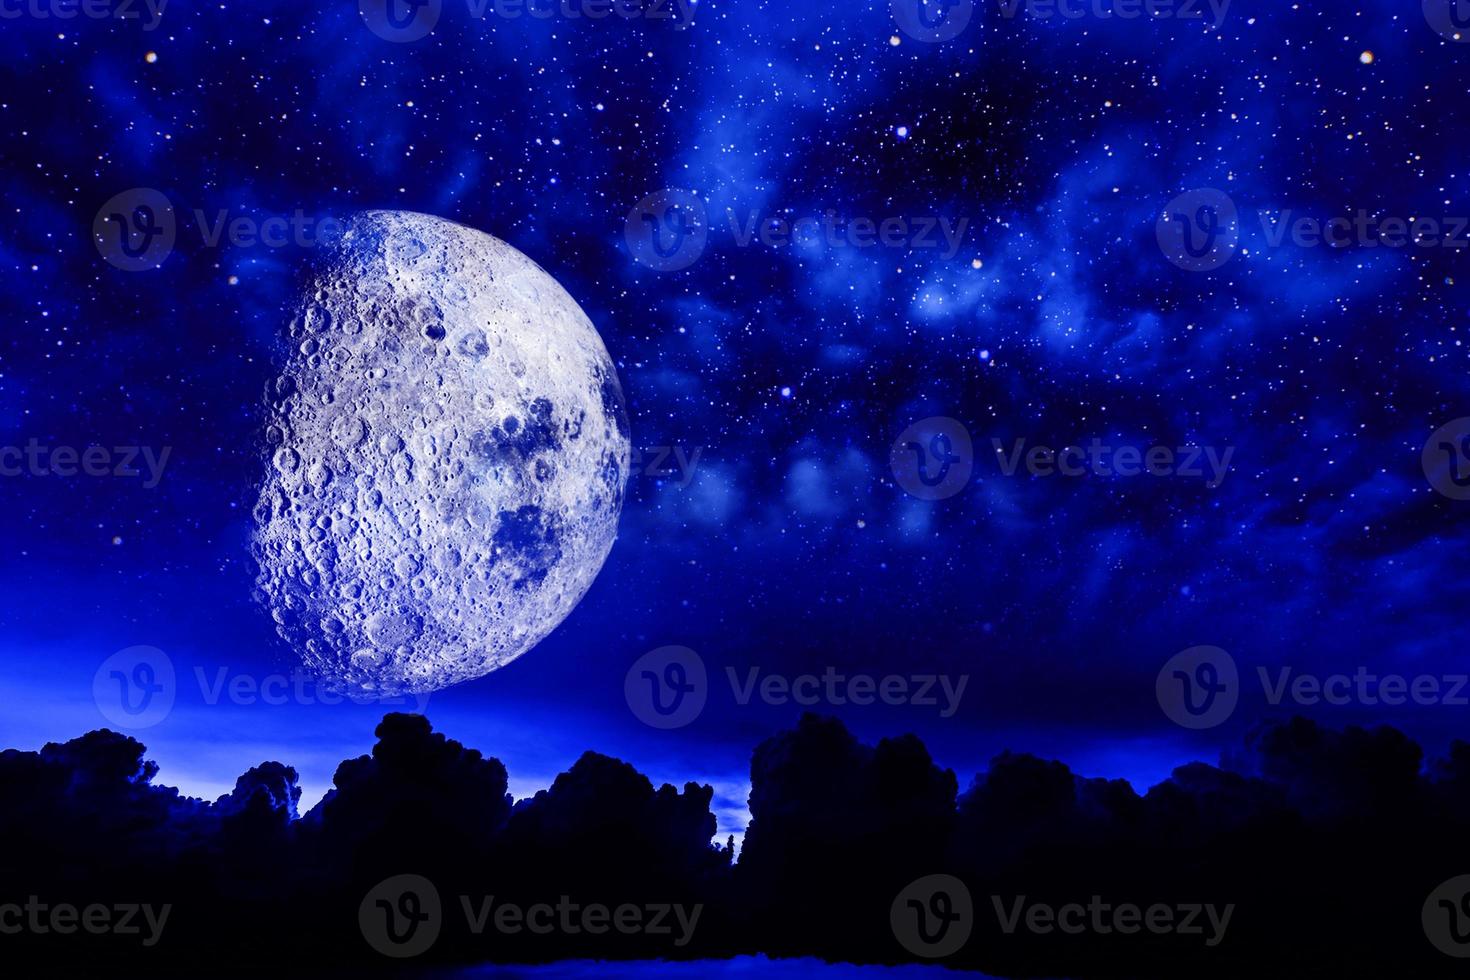 panorama dramatique bleu clair de la nuit de la galaxie depuis l'espace de l'univers lunaire sur le ciel nocturne photo